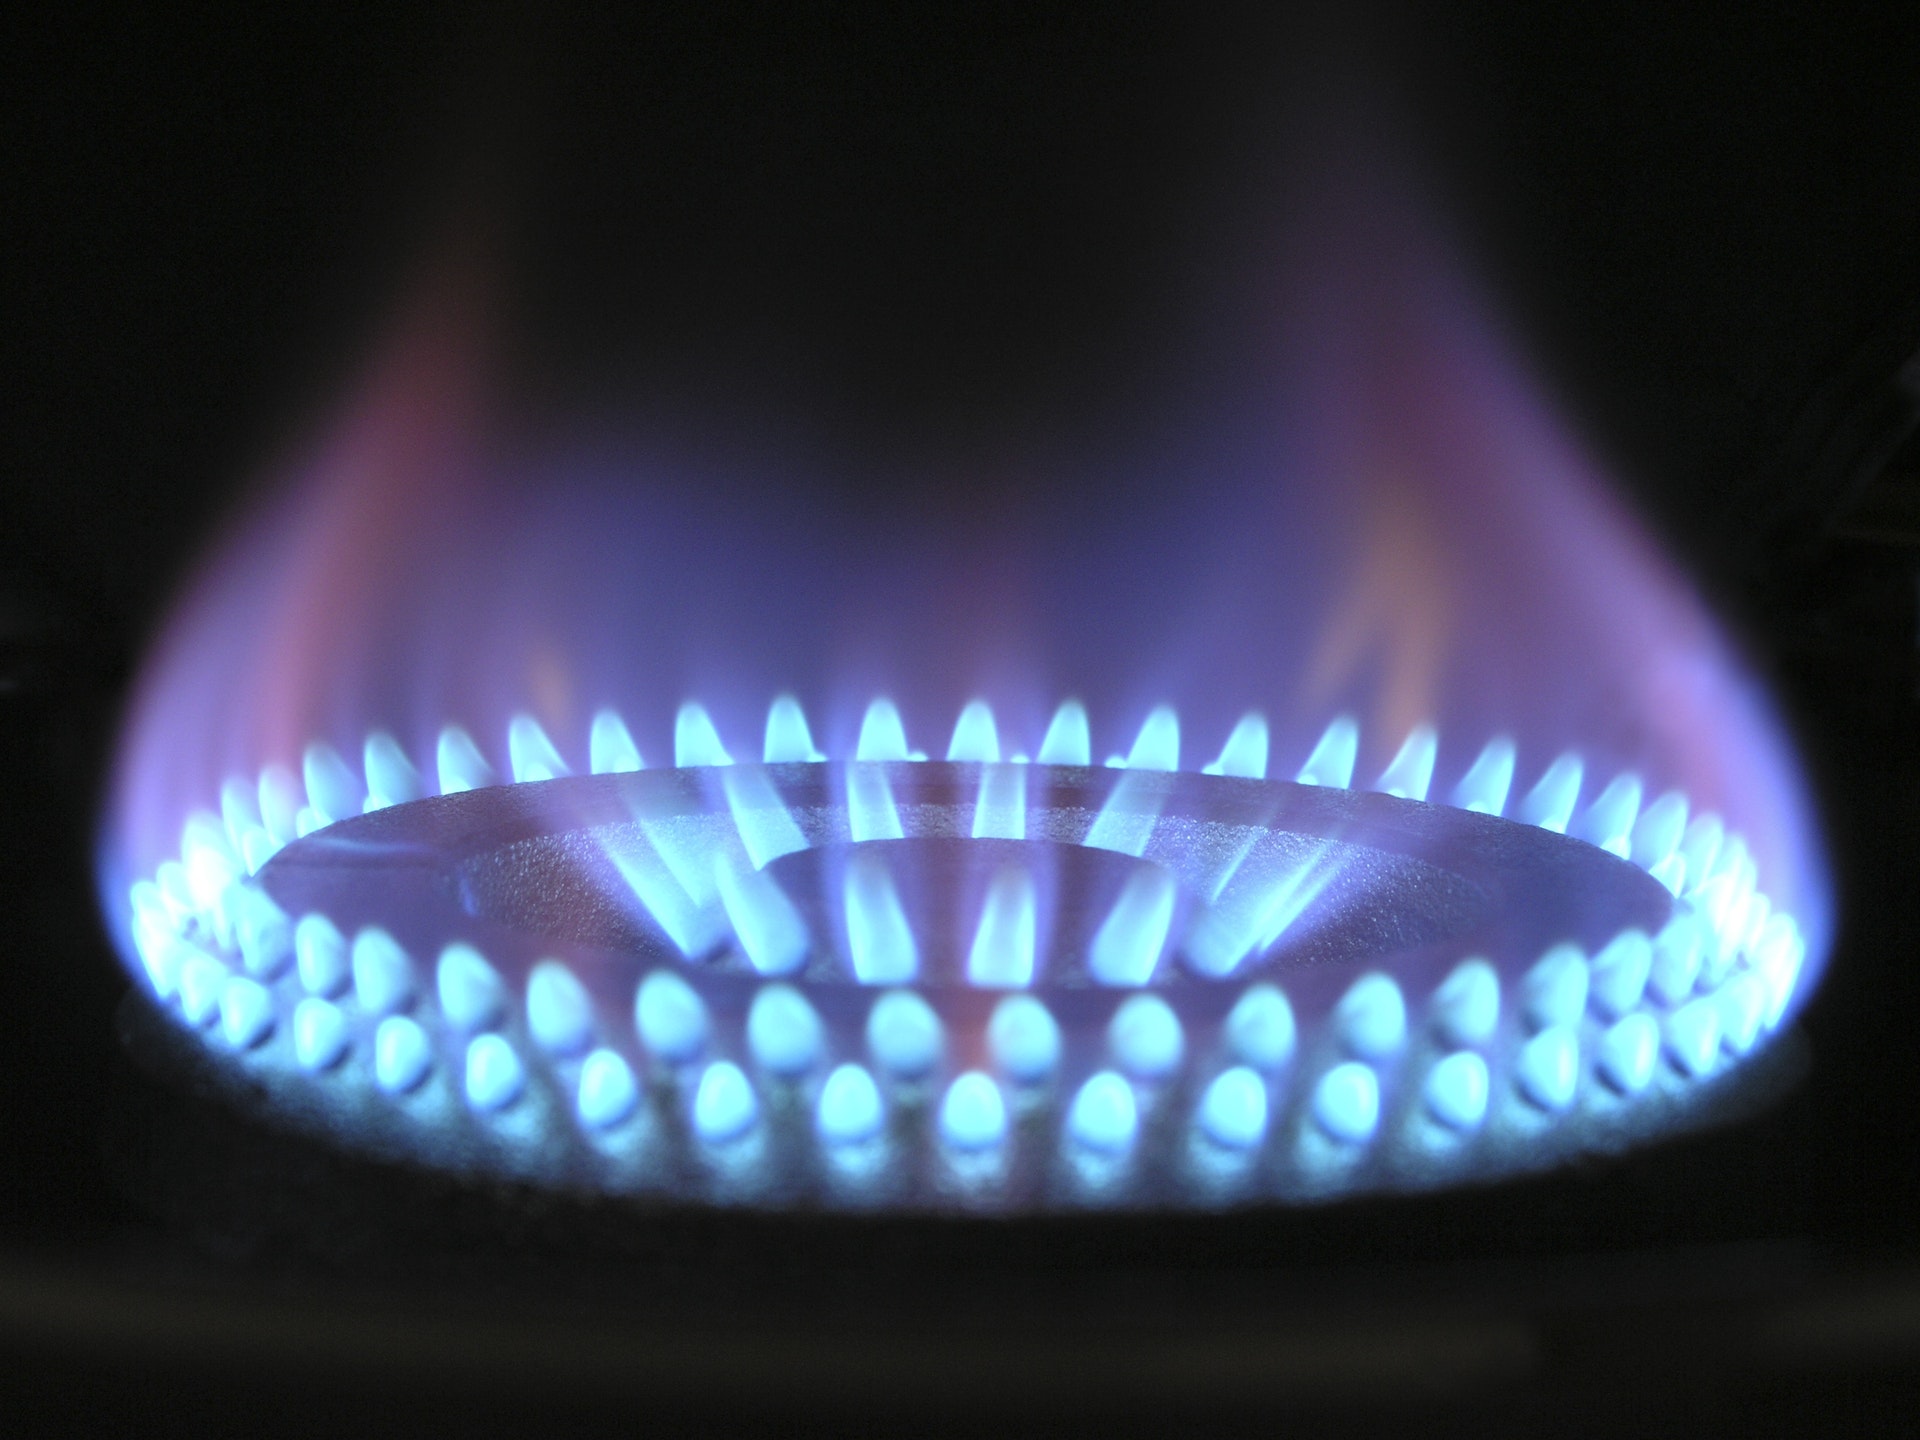 hausse prix gaz naturel declencher recession ue - Le Monde de l'Energie